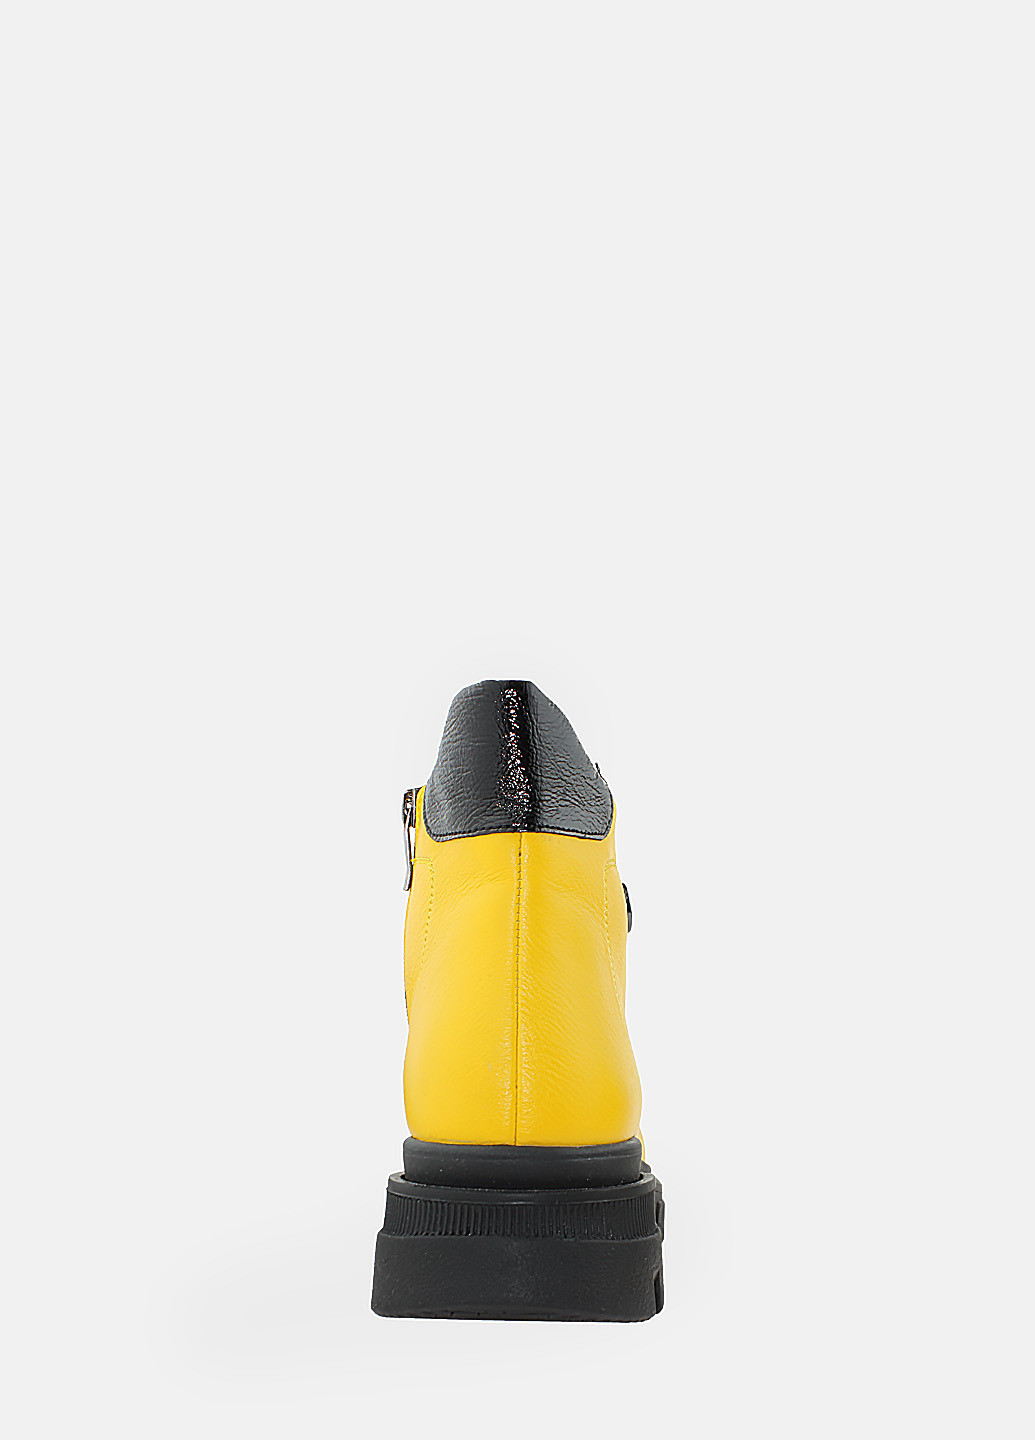 Осенние ботинки rh246-8 жёлтый Hitcher